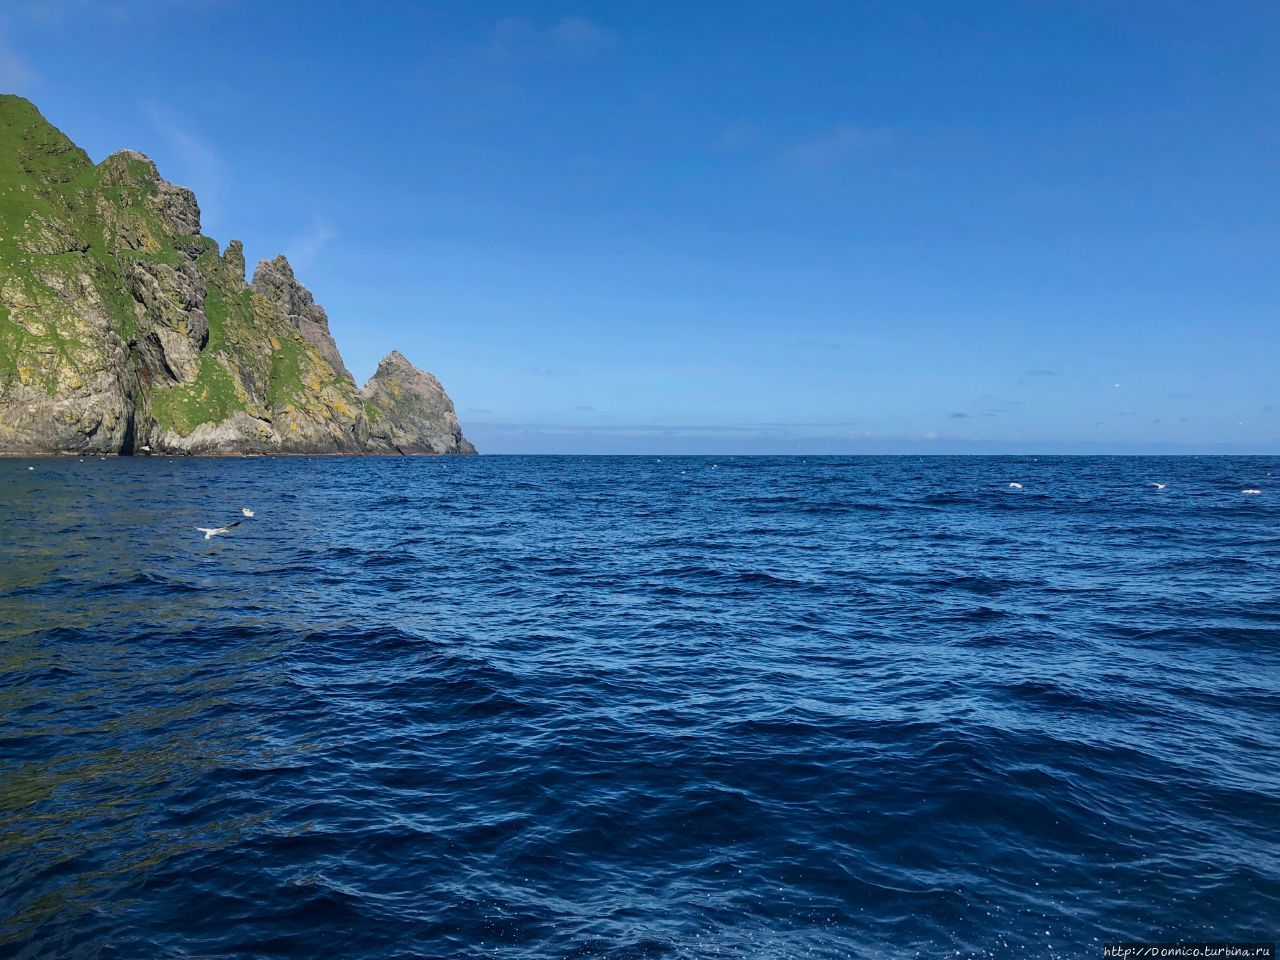 Последняя тайна Европы: Морская одиссея и Шпили-Вилли Остров Боререй, архипелаг Сент-Килда, Великобритания